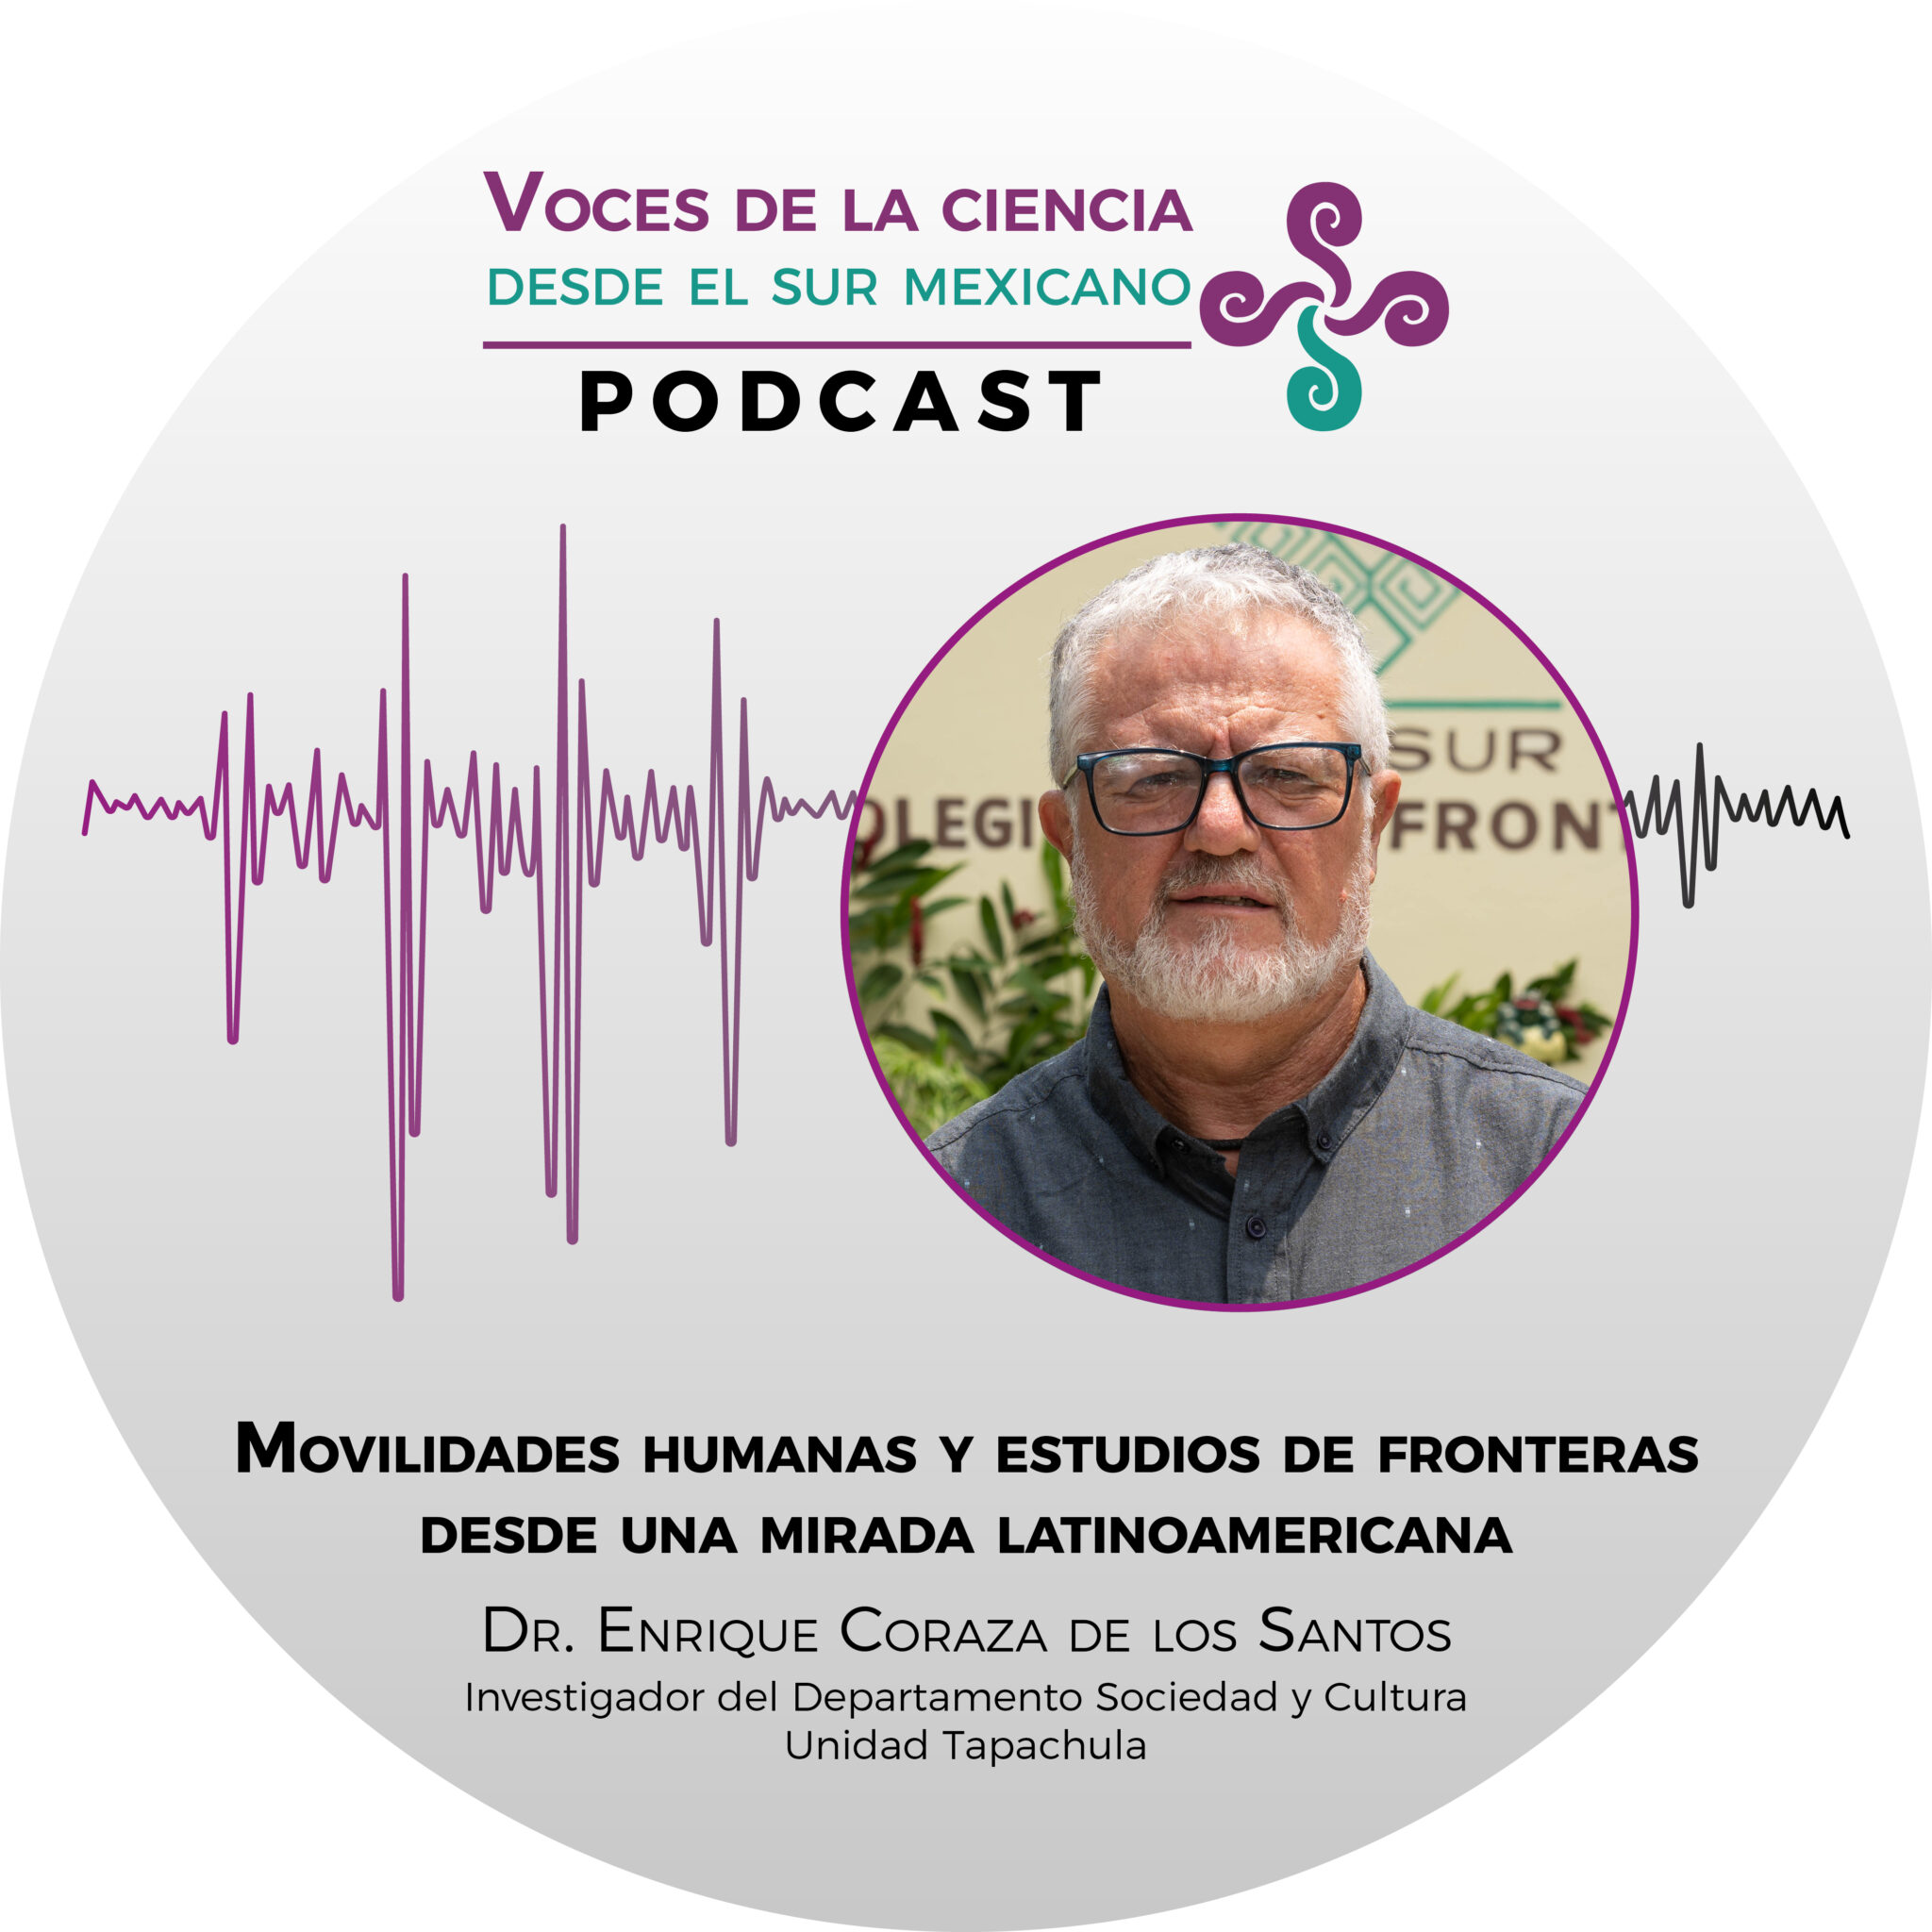 Movilidades humanas y estudios de fronteras desde una mirada latinoamericana